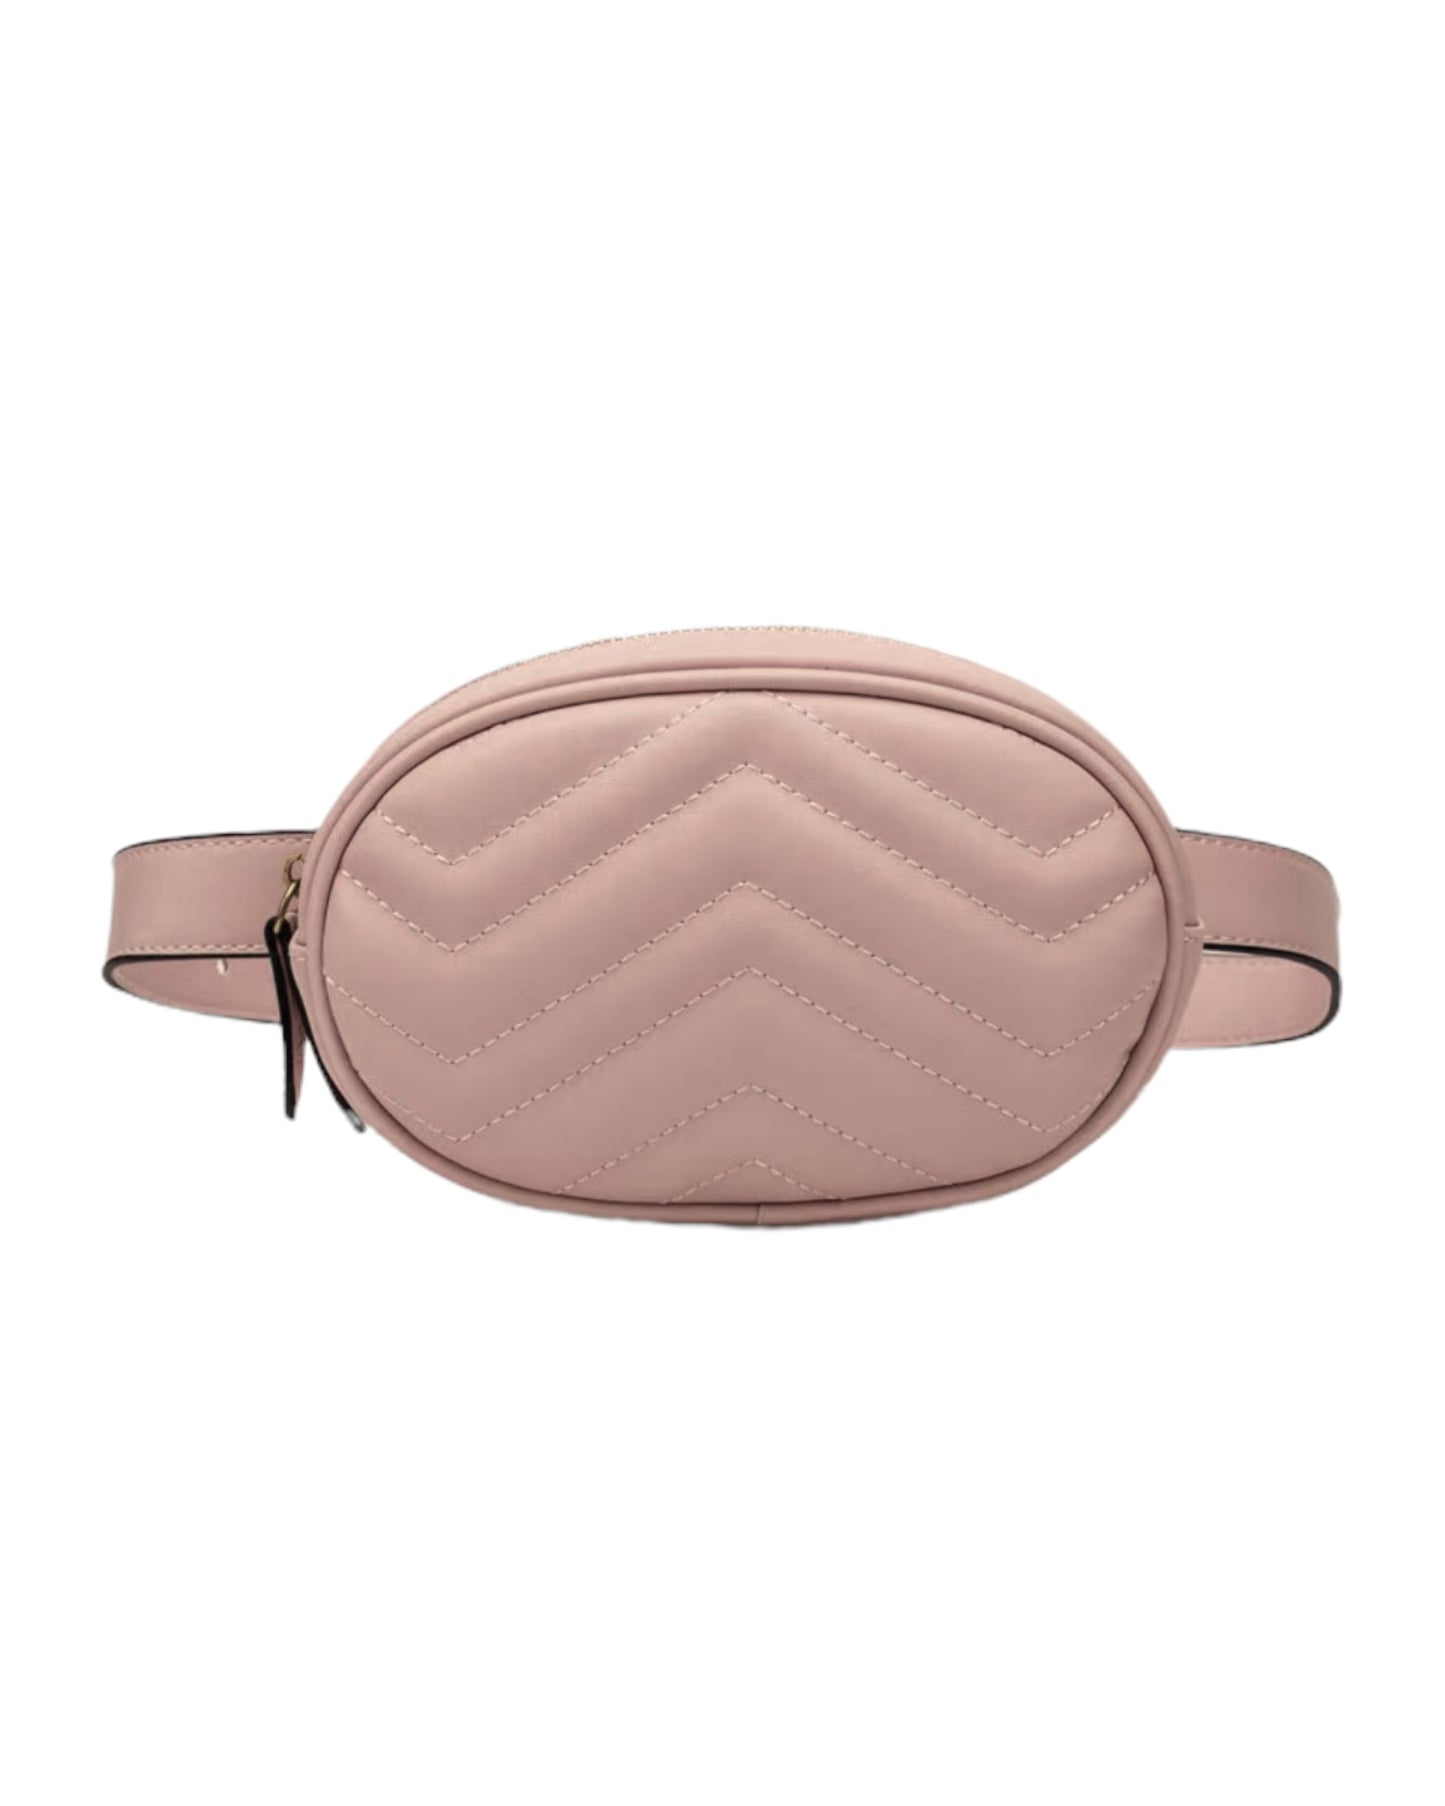 pink PU leather waist bag